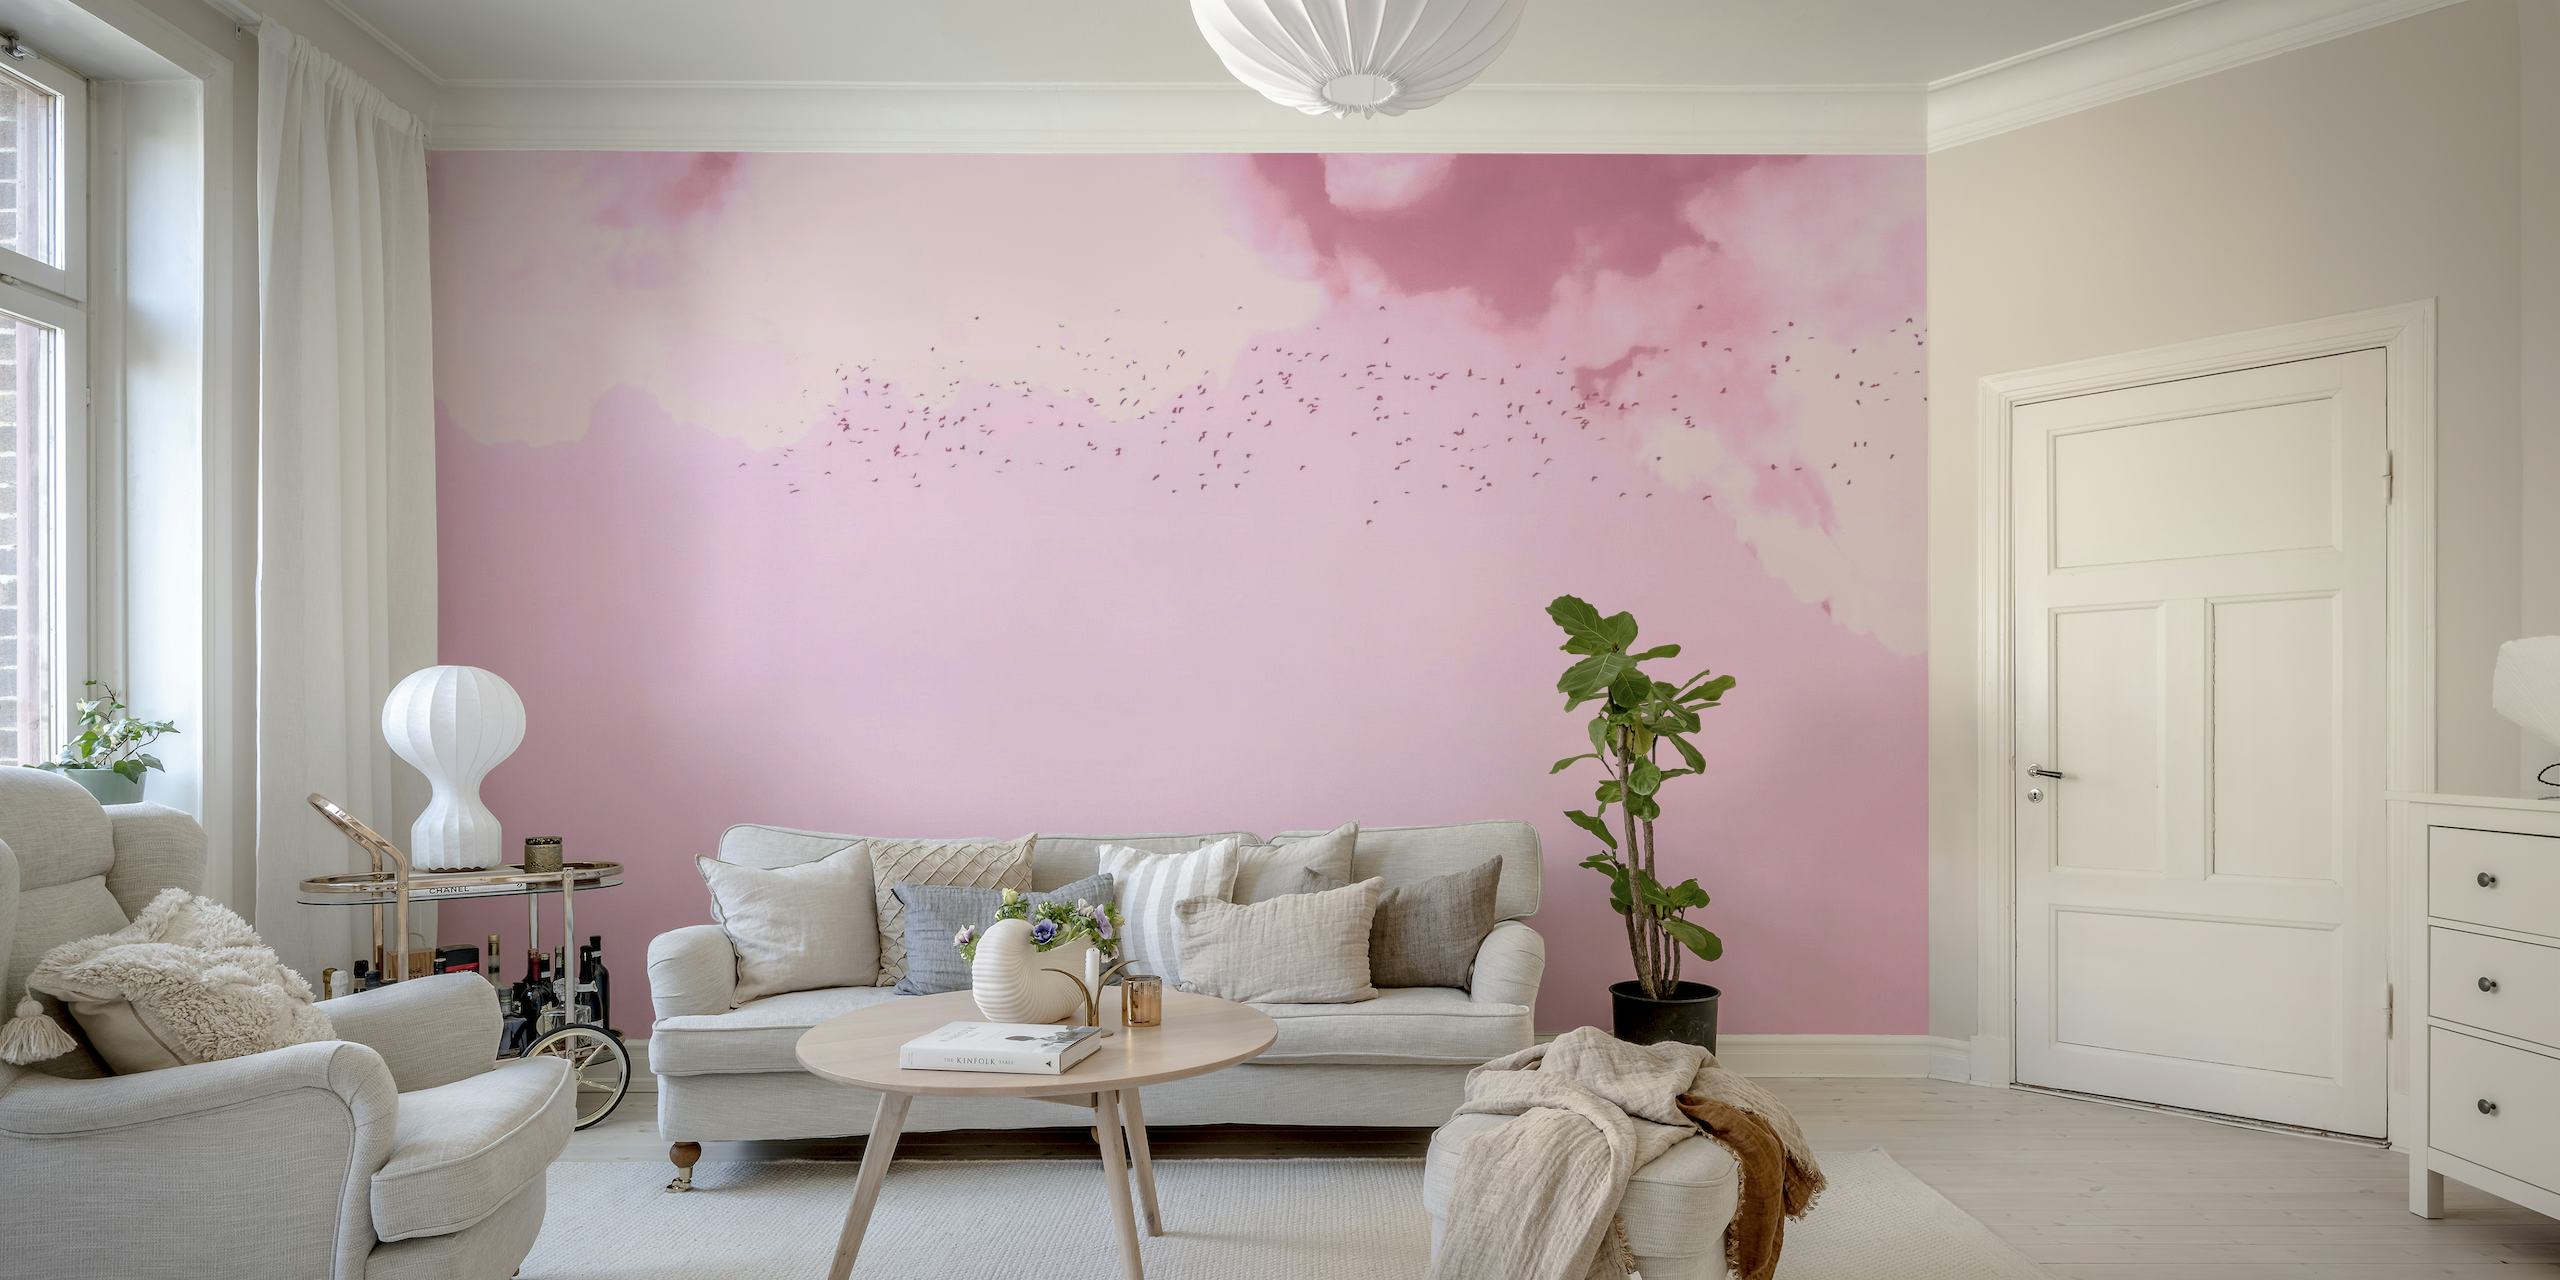 Snová růžová a purpurová nástěnná malba zobrazující ptáky v letu mezi měkkými mraky